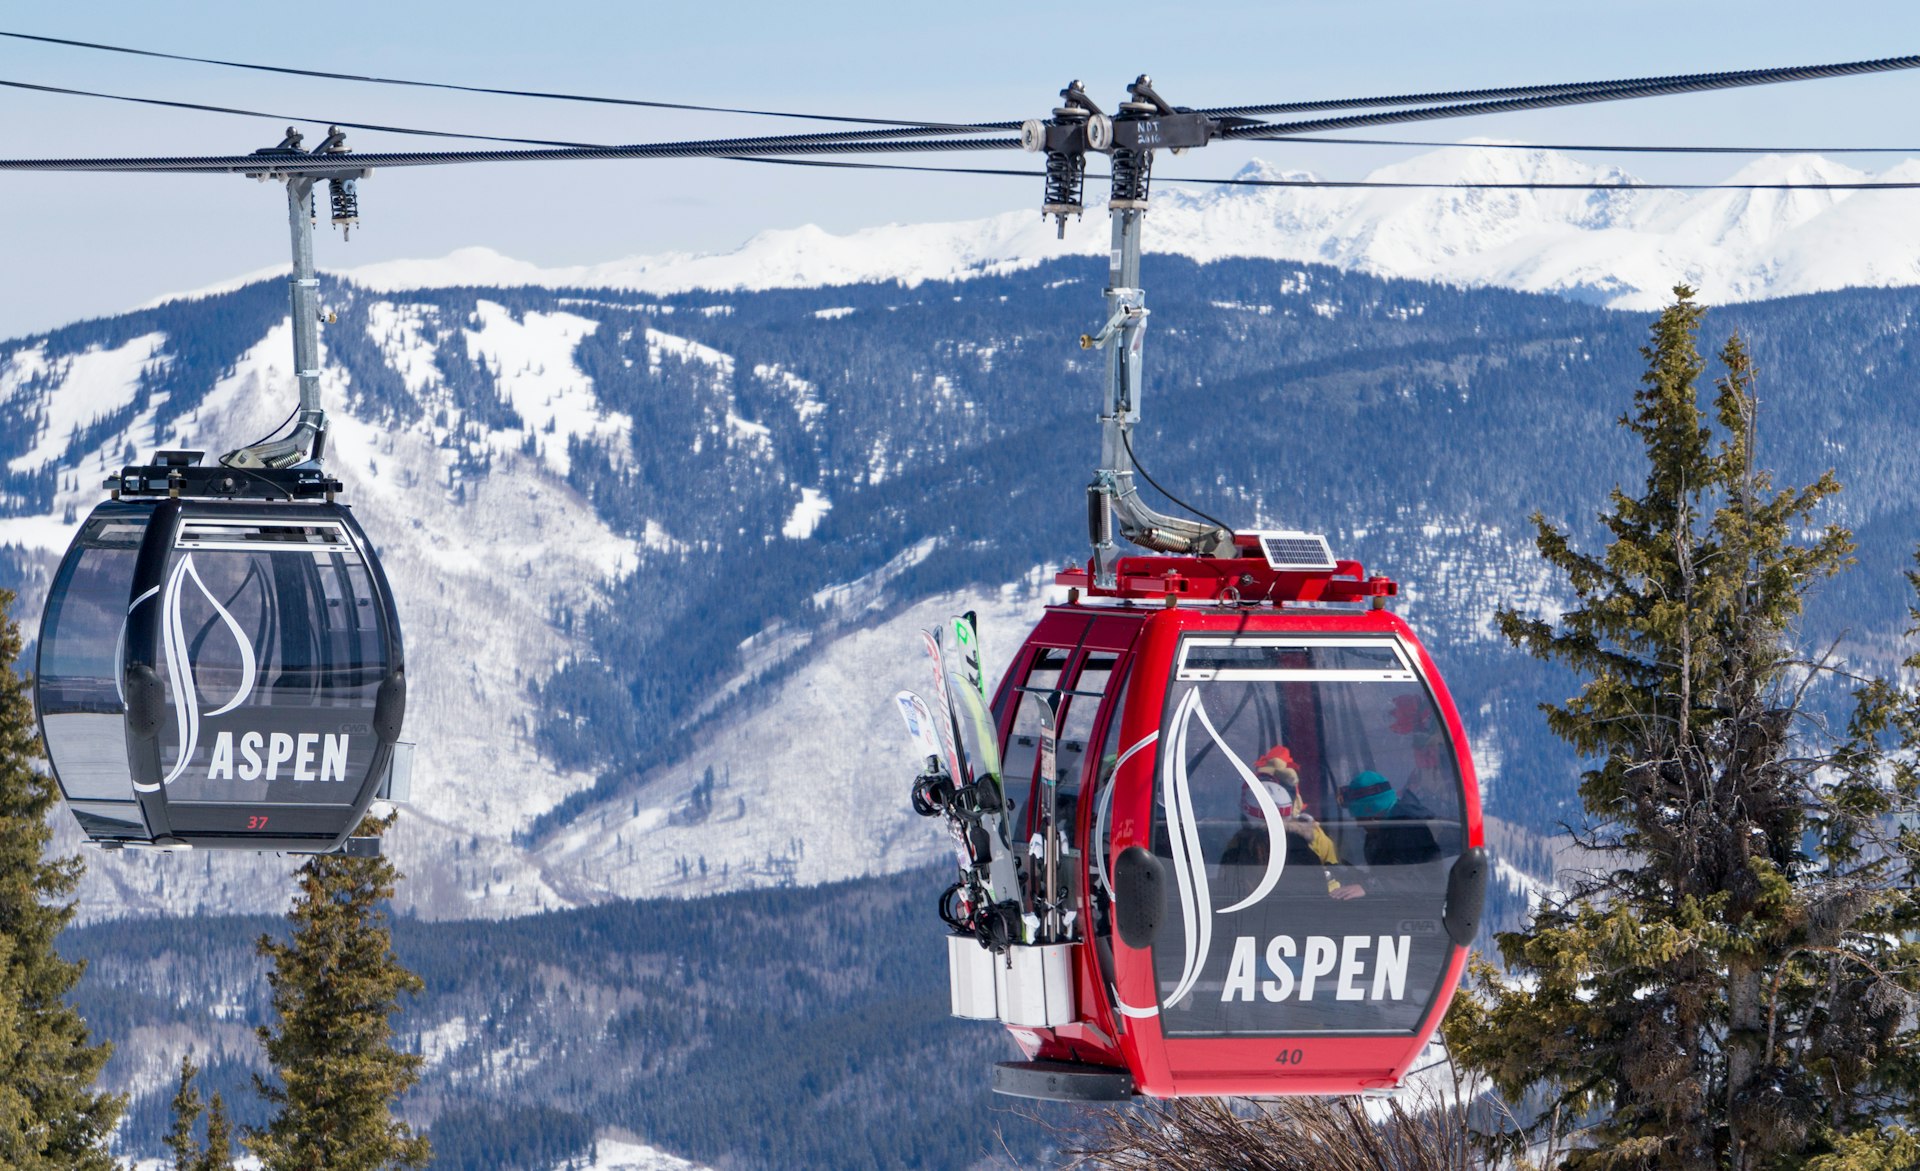 Gondolas delivering skiers in Aspen, Colorado, USA